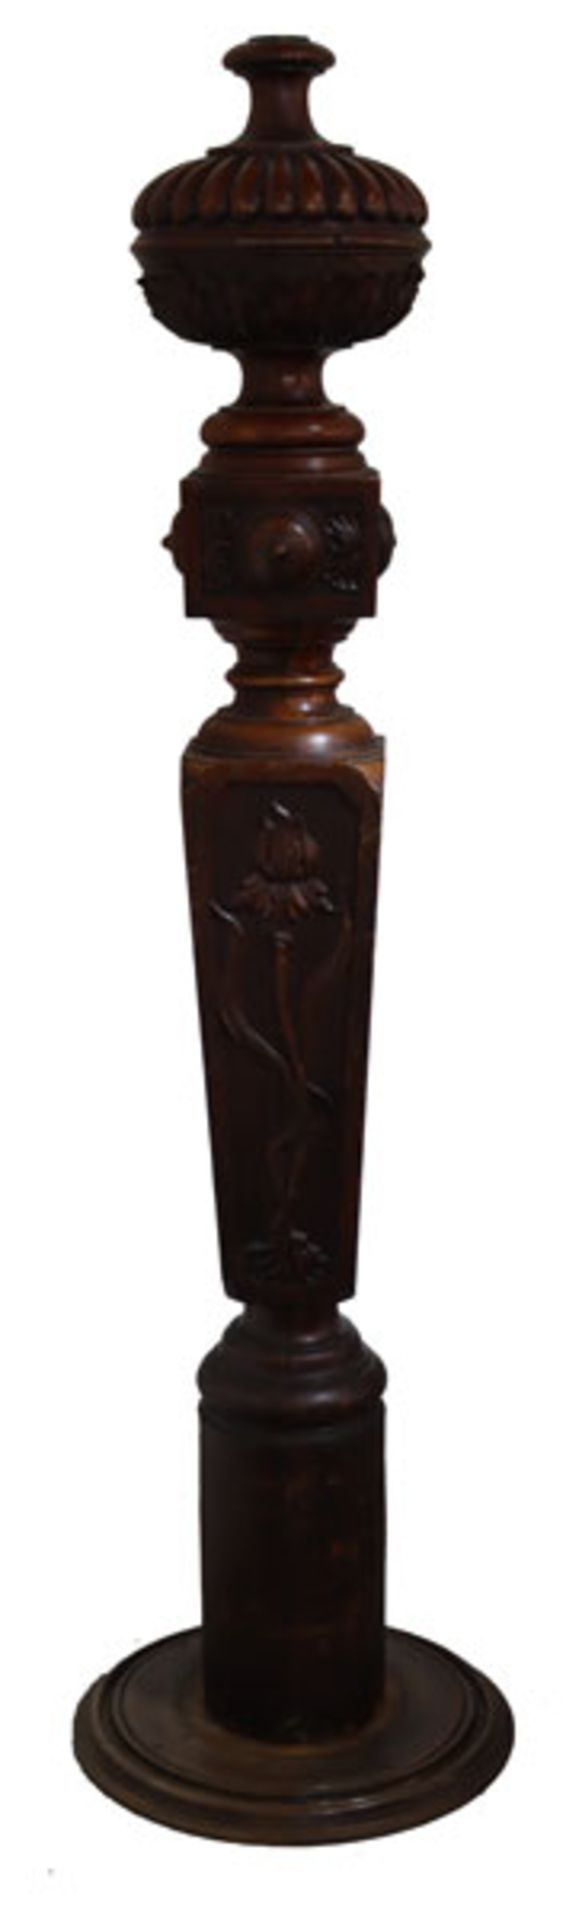 Holz Deko-Säule, reich beschnitzt, dunkel gebeizt, H 183 cm, Altersspuren, teils bestossen